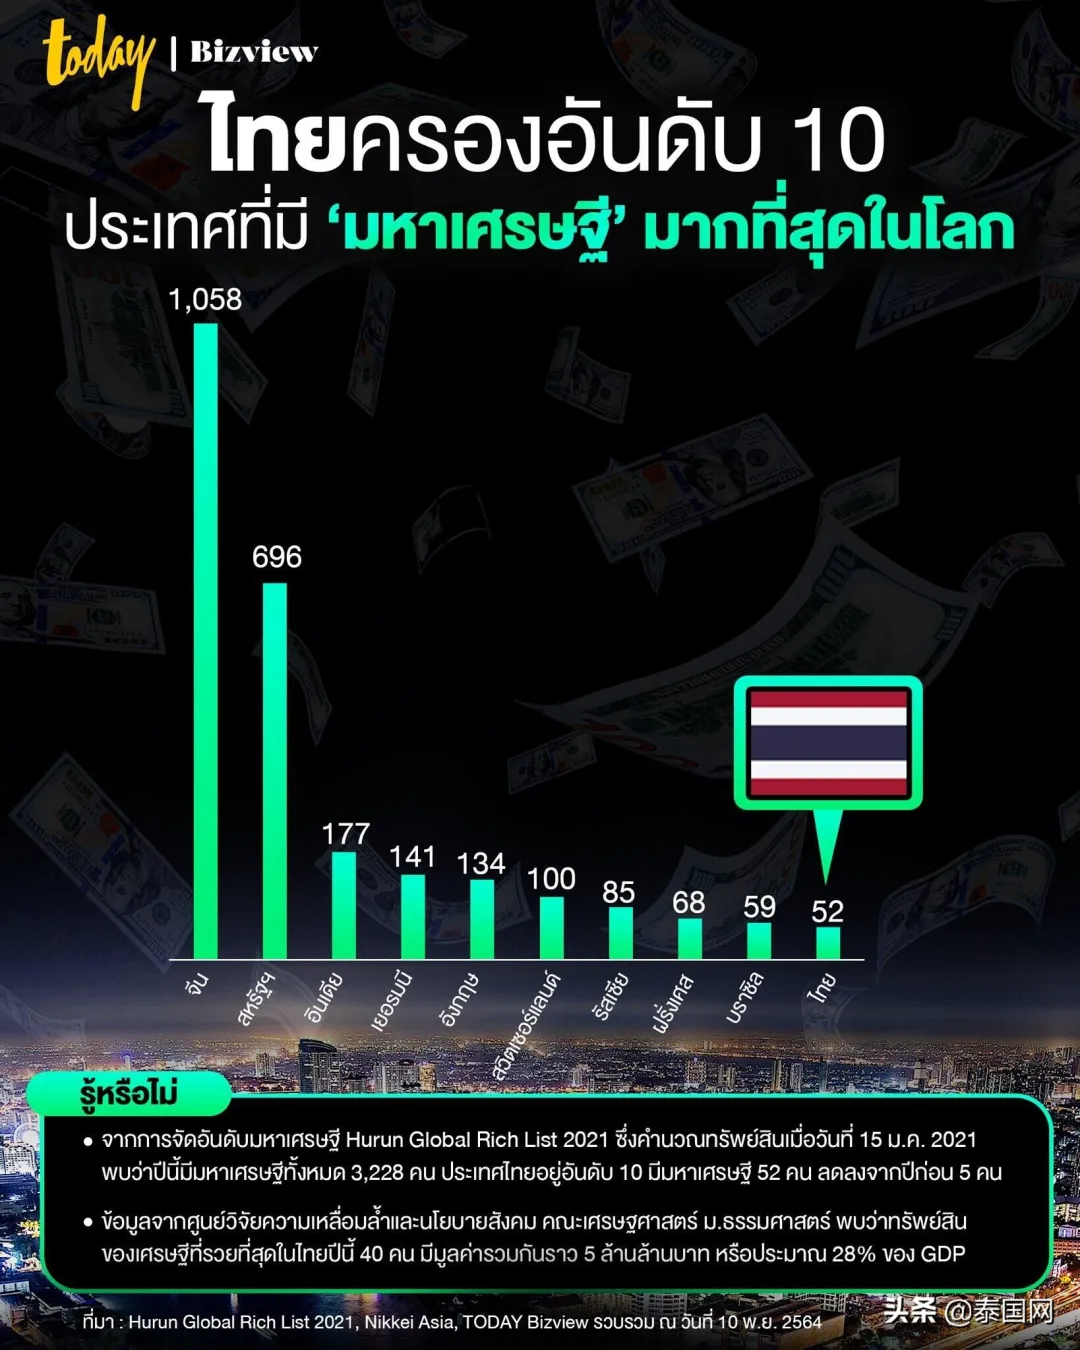 月入4000元人民币,在泰国是什么水平?能买得起房吗?